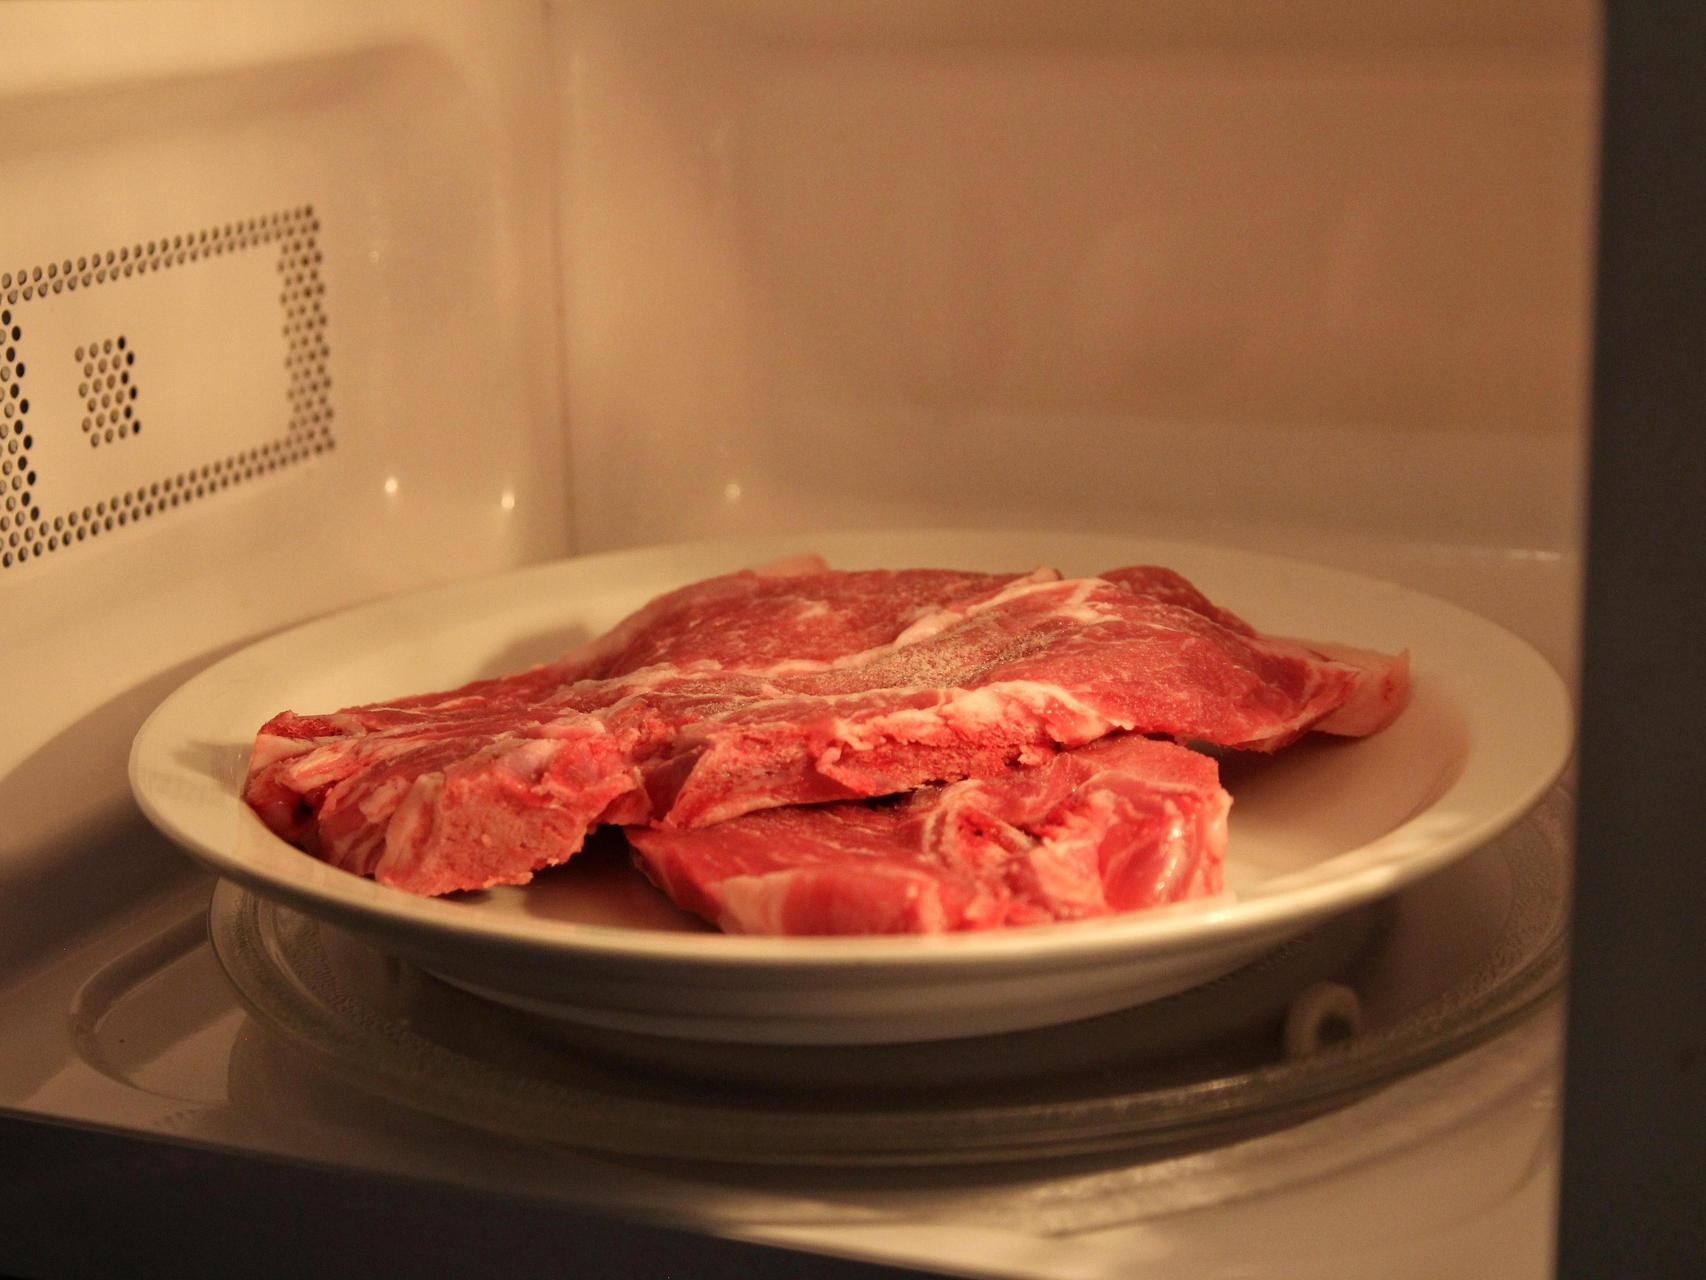 Как быстро разморозить мясо в микроволновке. Говядина в микроволновке. Разморозка мяса в микроволновке. Размороженное мясо не опасно.